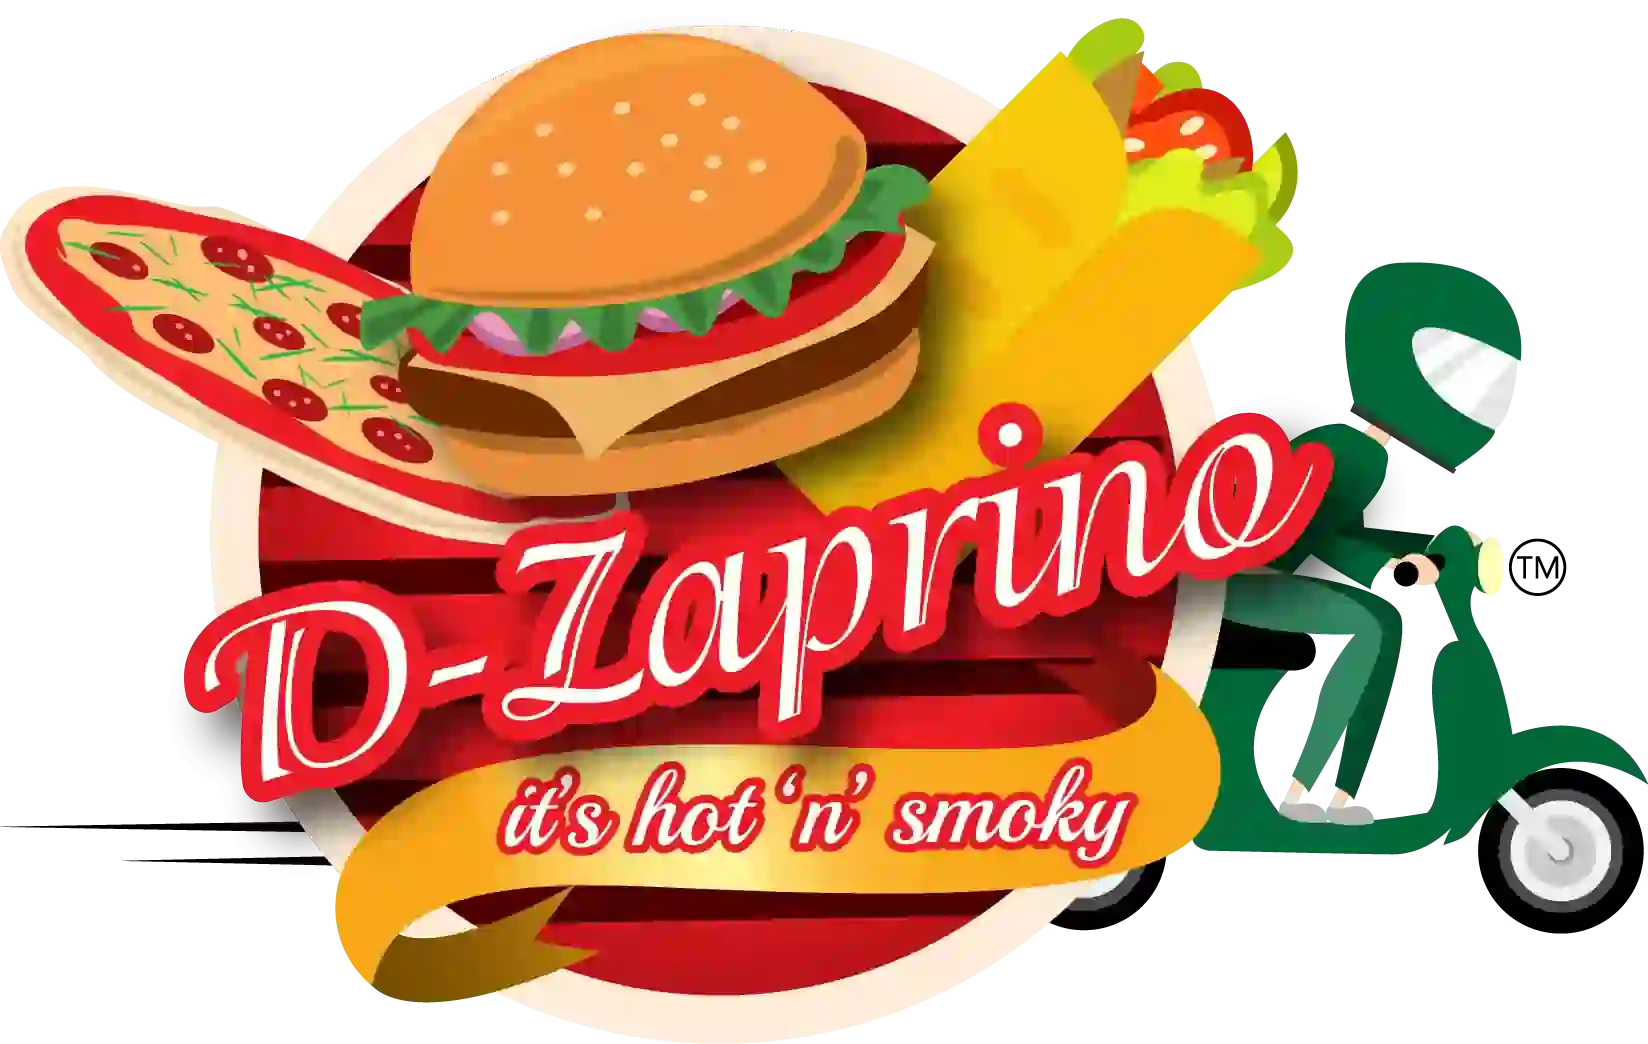 D-Zaprino